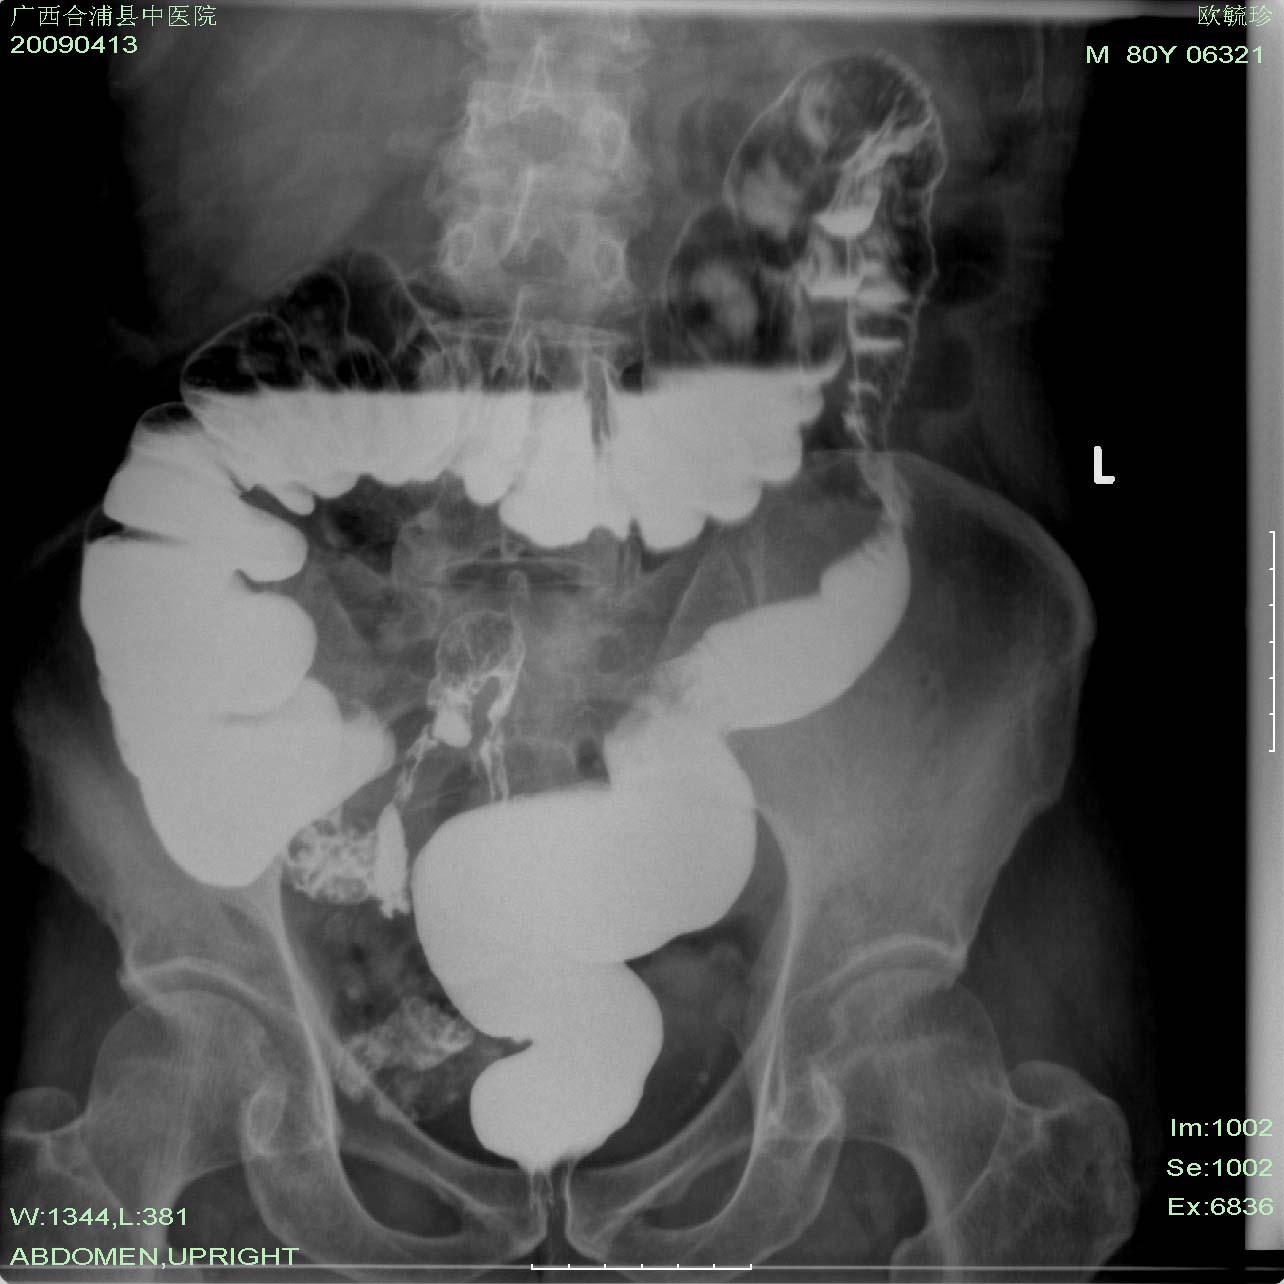 乙状结肠右侧缘见一充盈缺损,降结肠见向心性狭窄.还有一张图片.